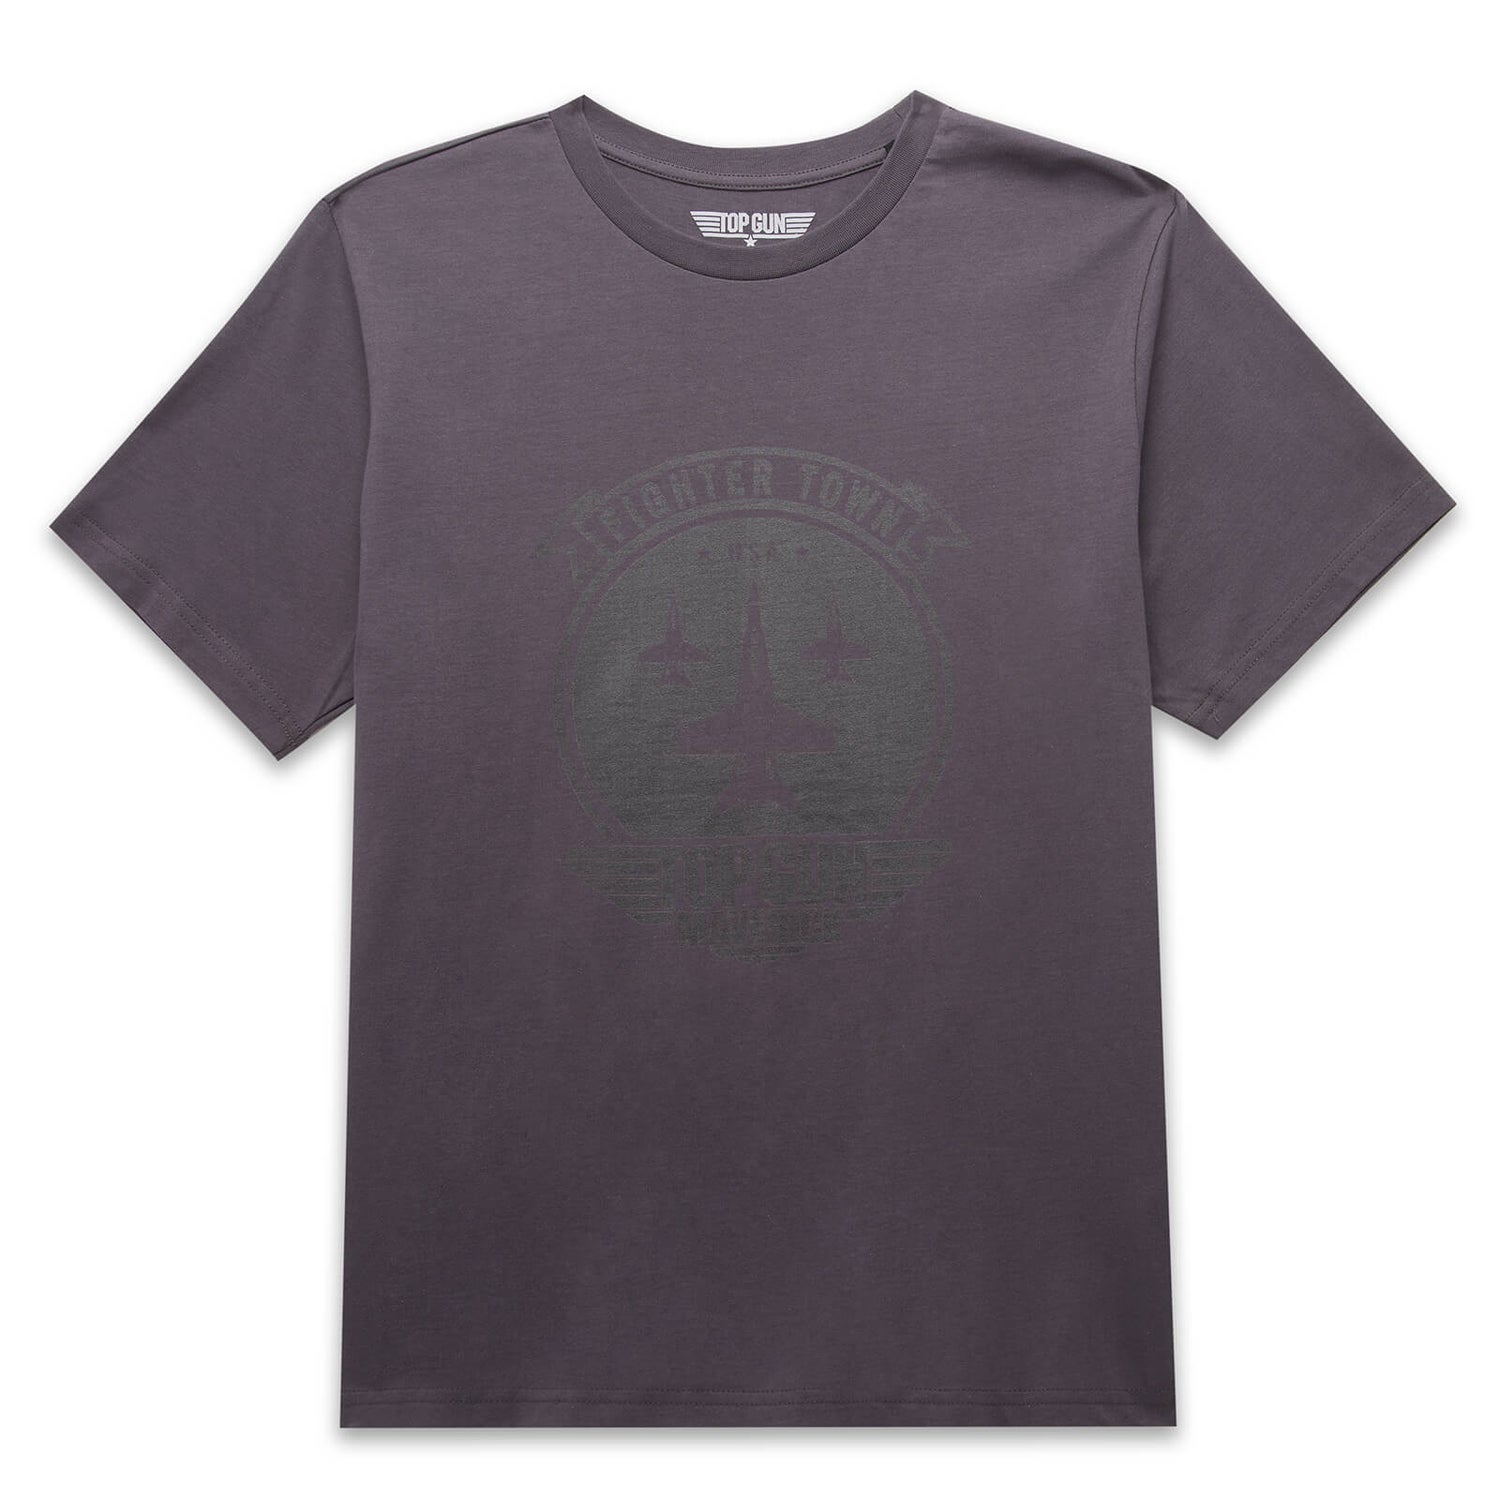 Top Gun Fighter Town Unisex T-Shirt - Charcoal